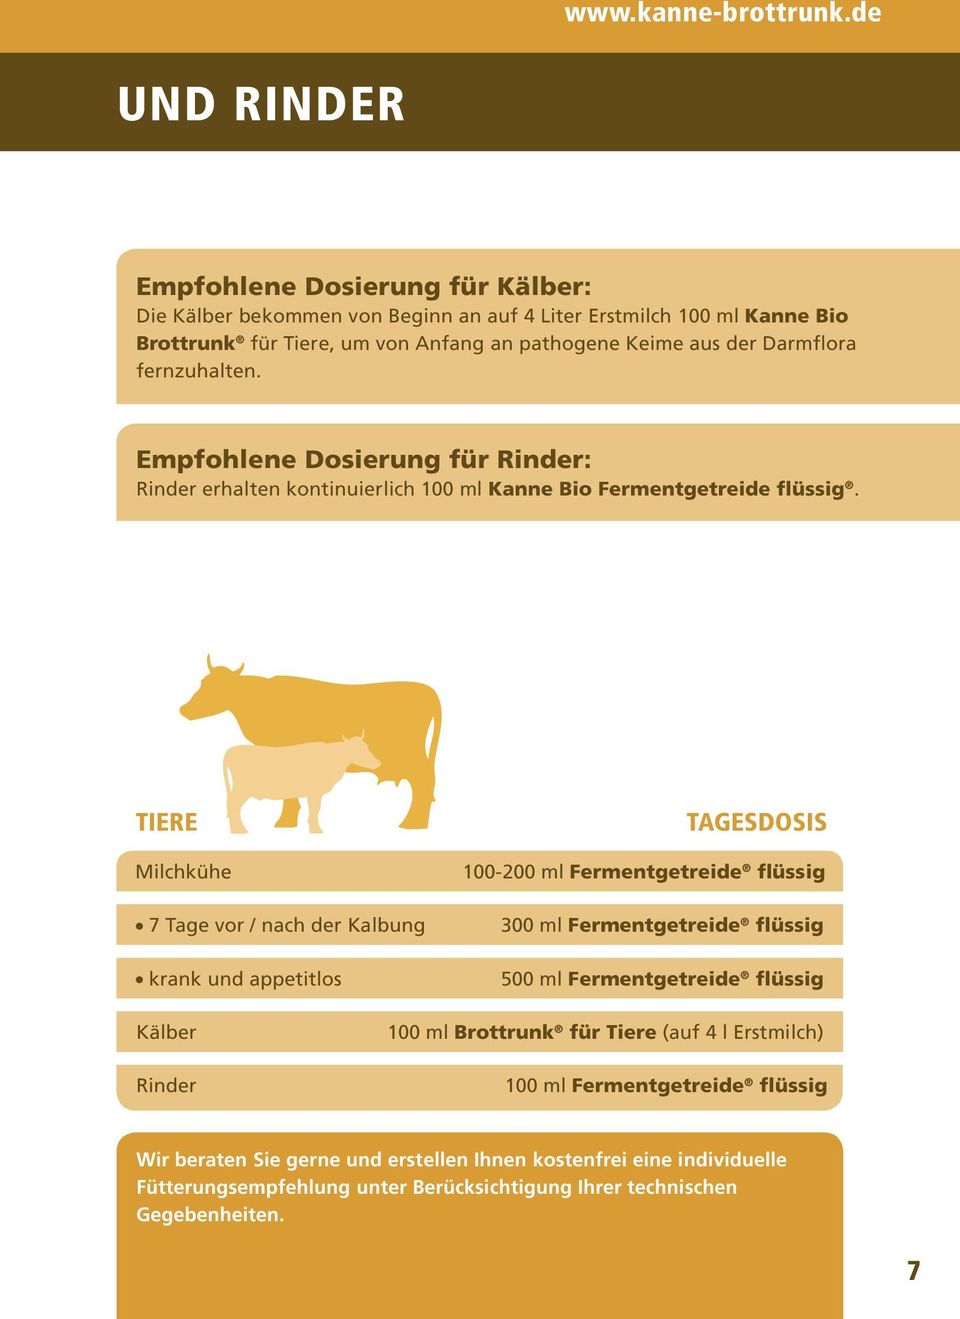 Darmflora fernzuhalten. Empfohlene Dosierung für Rinder: Rinder erhalten kontinuierlich 100 ml Kanne Bio Fermentgetreide flüssig.